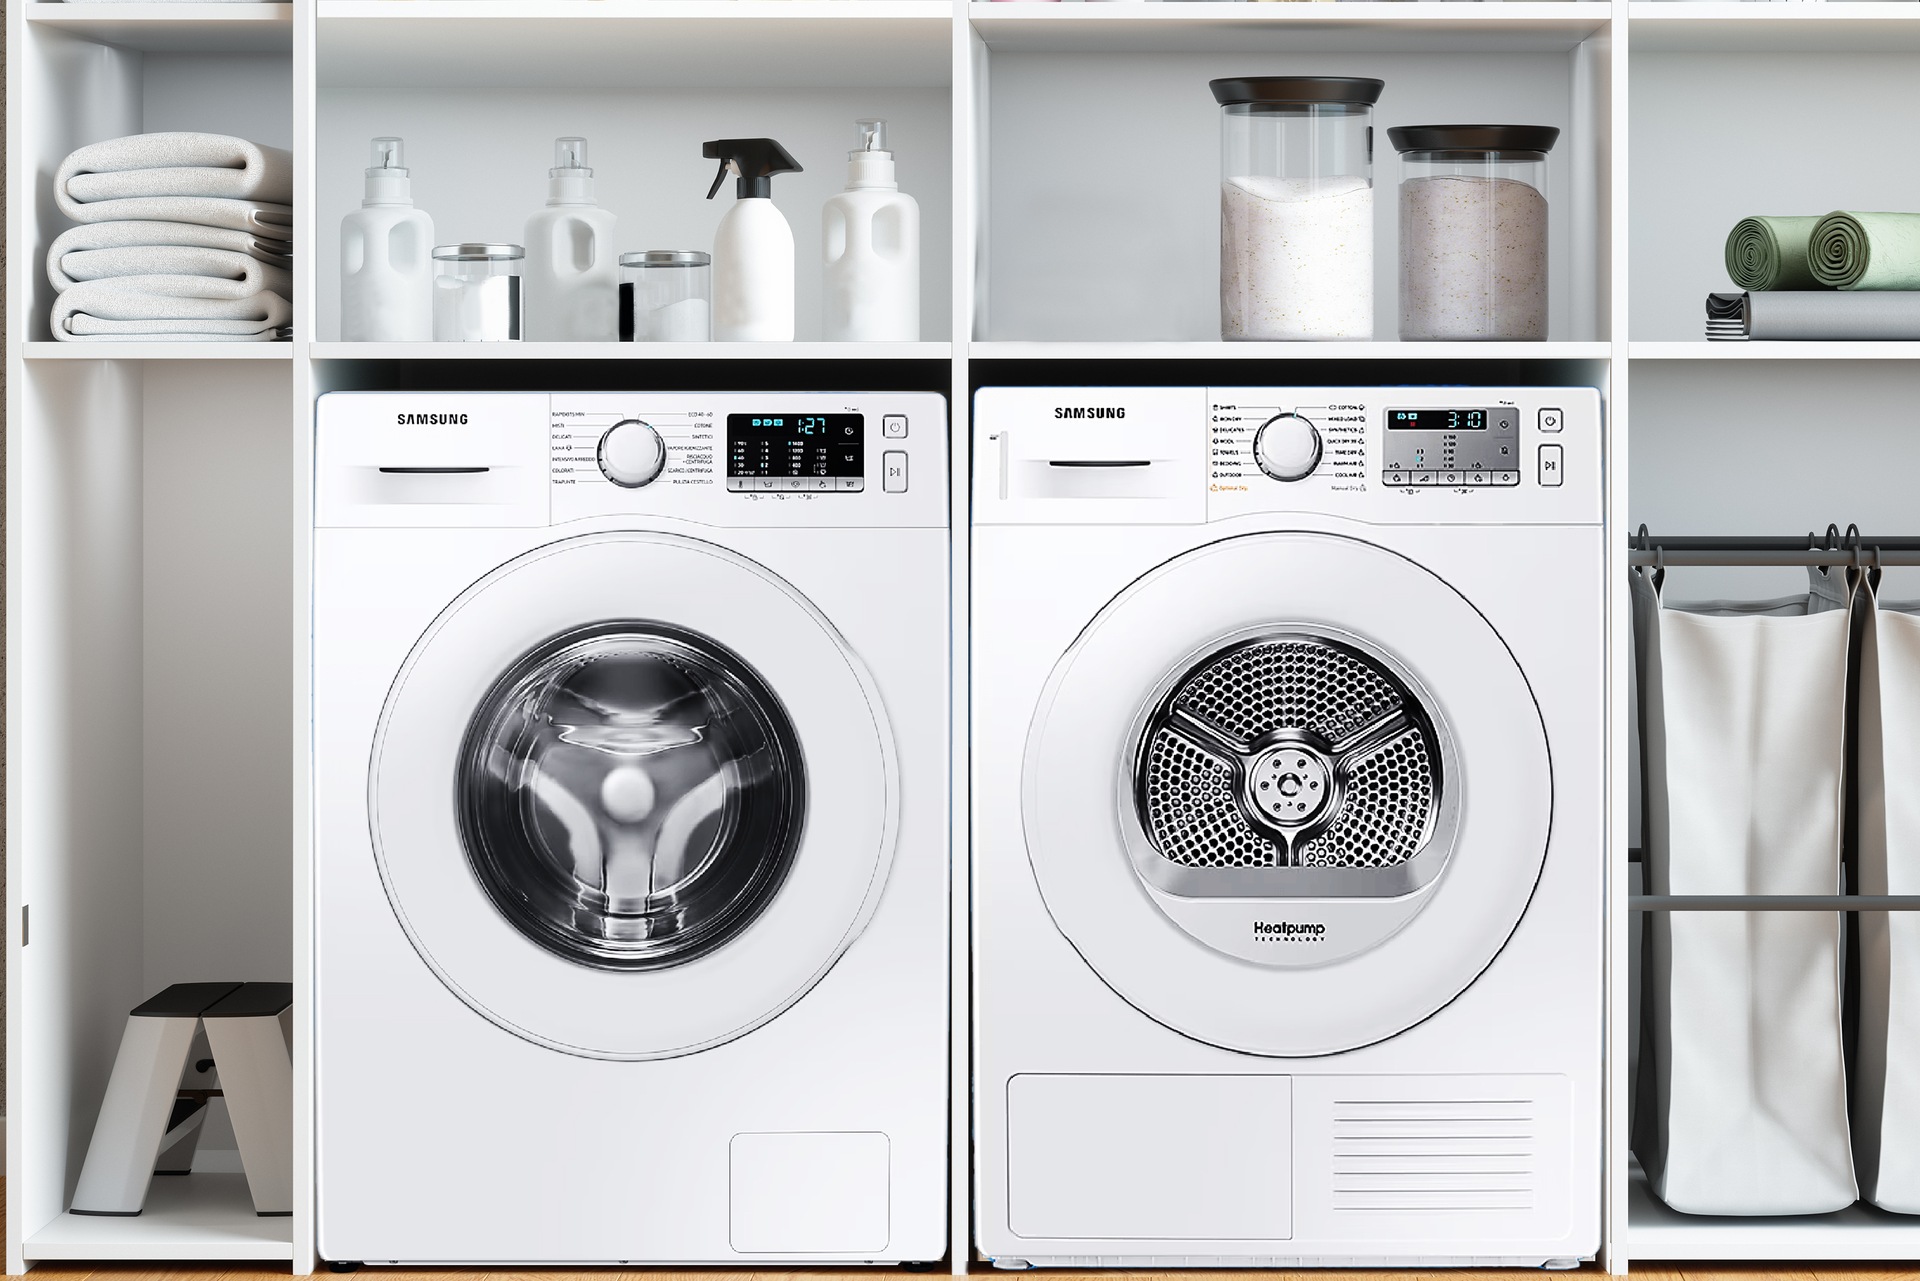 Supporto colonna lavatrice-asciugatrice - Elettrodomestici In